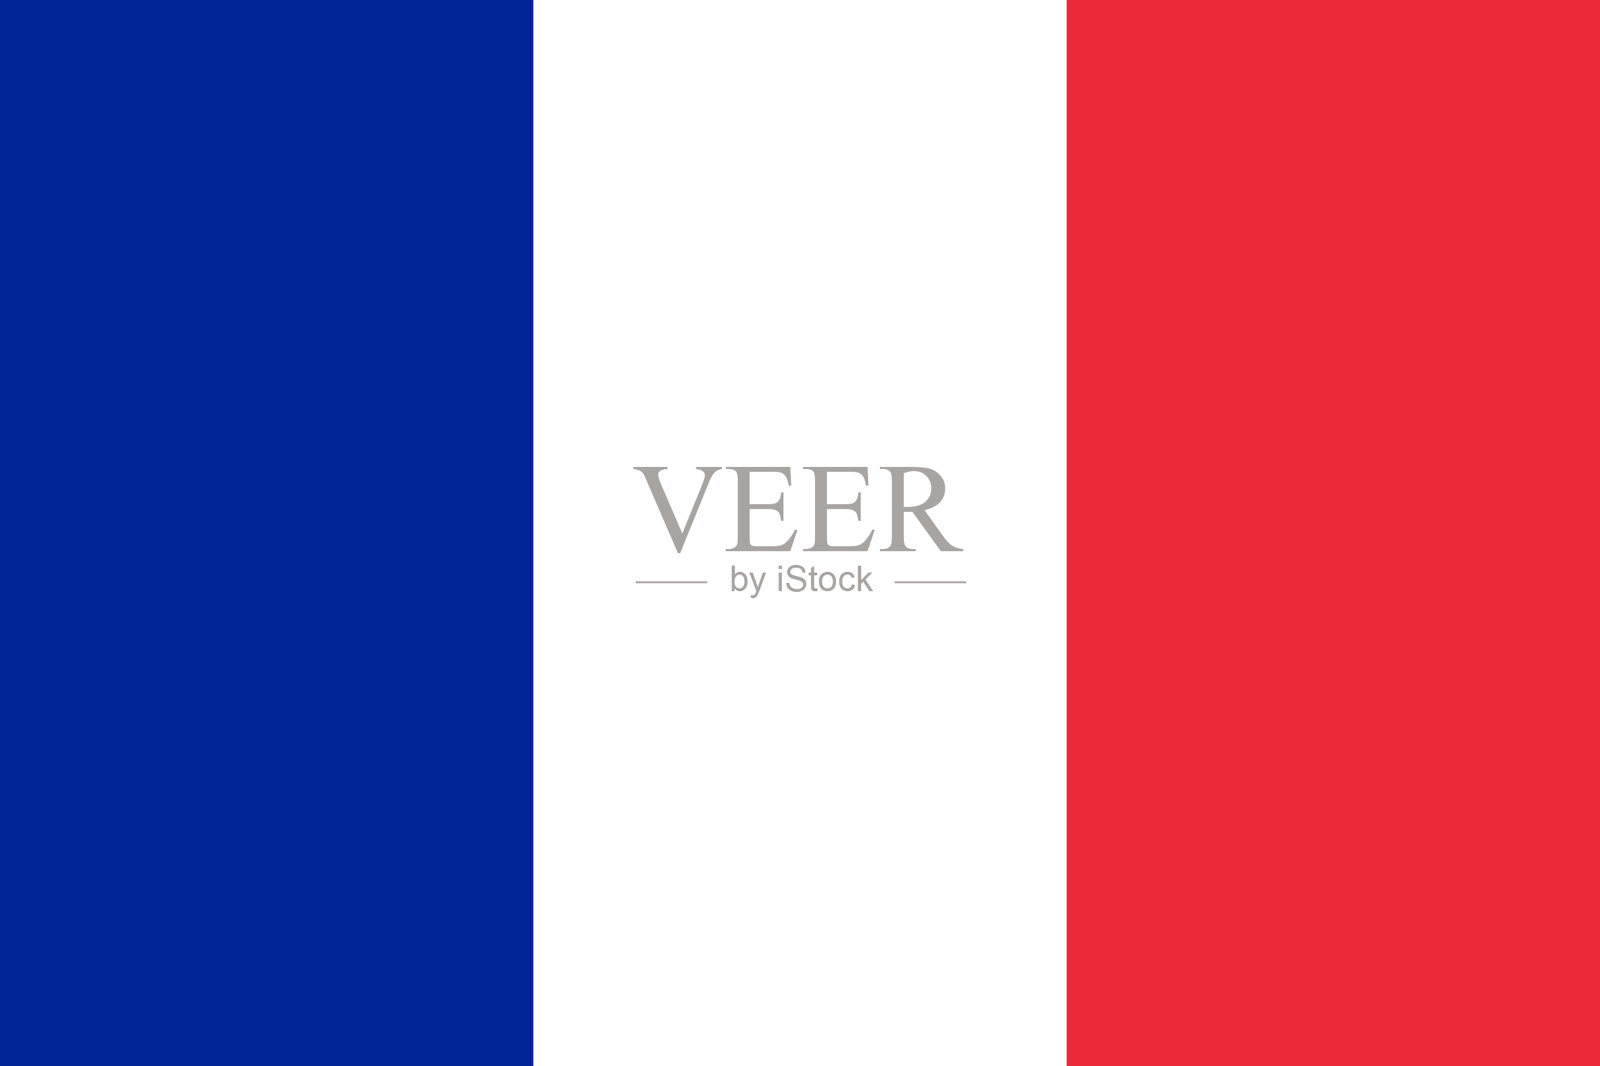 Drapeau Français France - Photo gratuite sur Pixabay - Pixabay